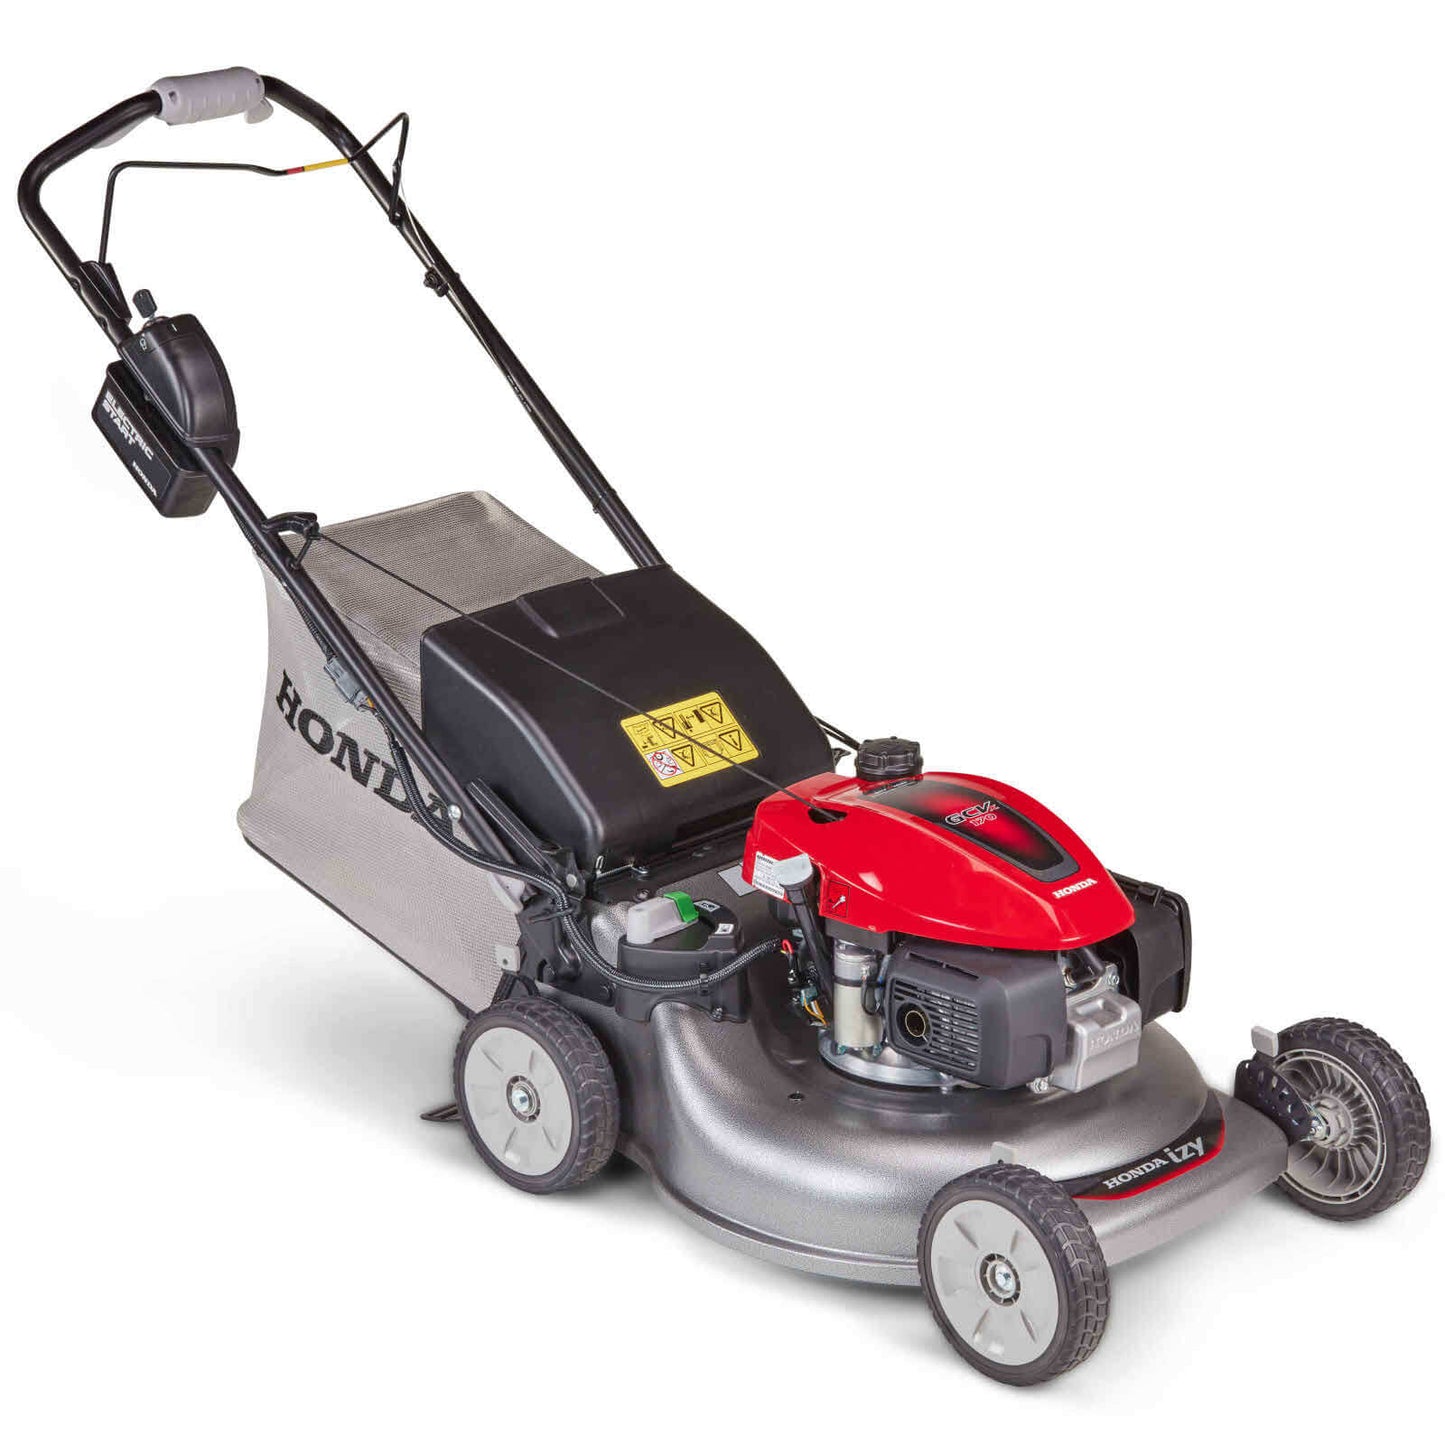 Honda HRG536VL Petrol Lawn Mower